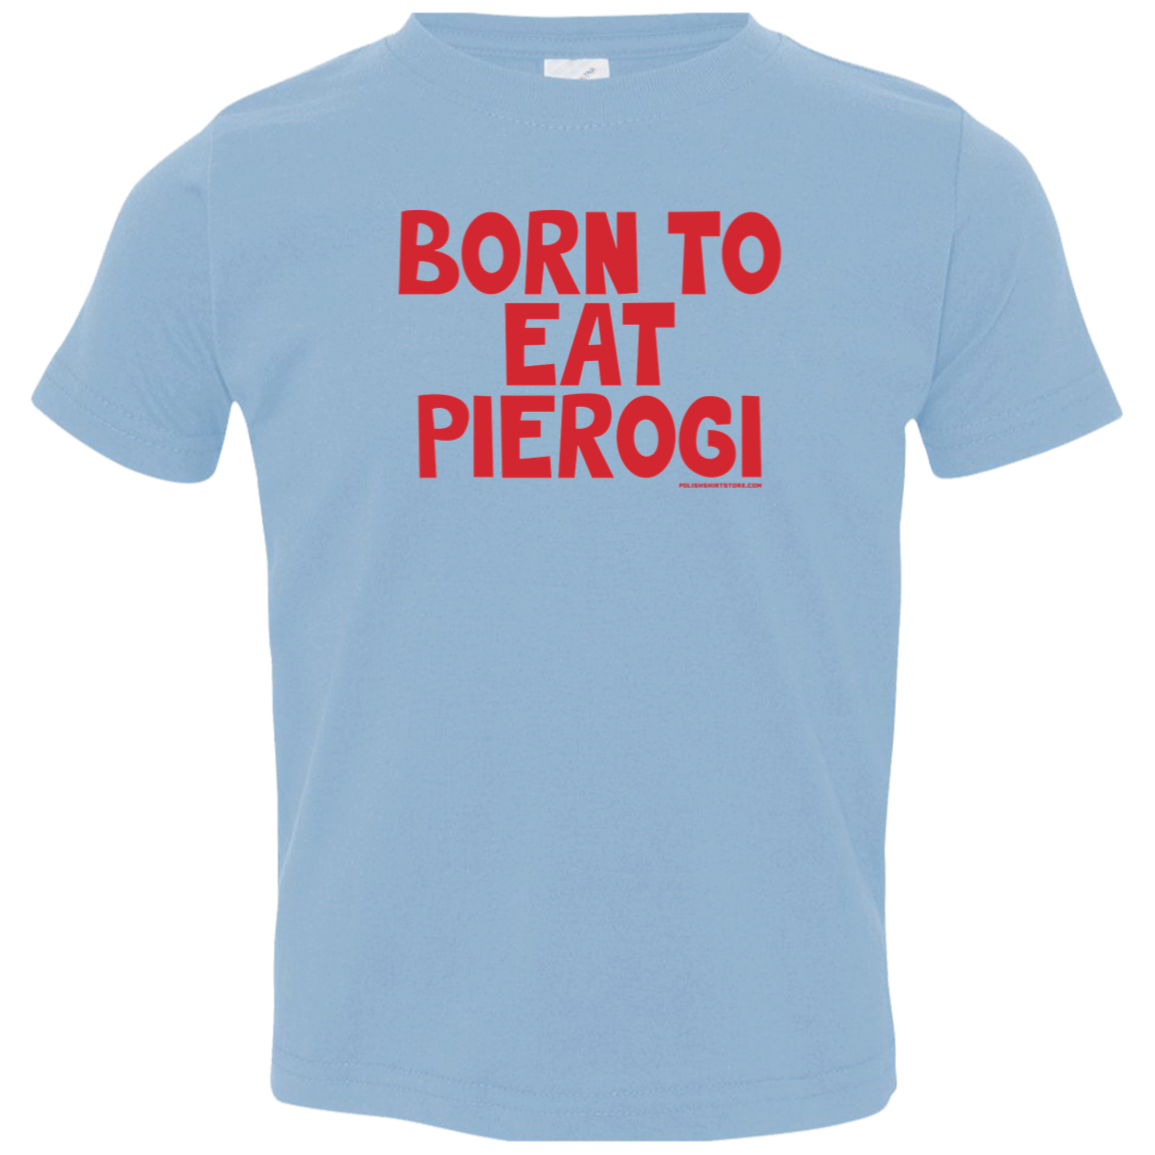 Born To Eat Pierogi Infant & Toddler T-Shirt Apparel CustomCat Toddler T-Shirt Light Blue 2T